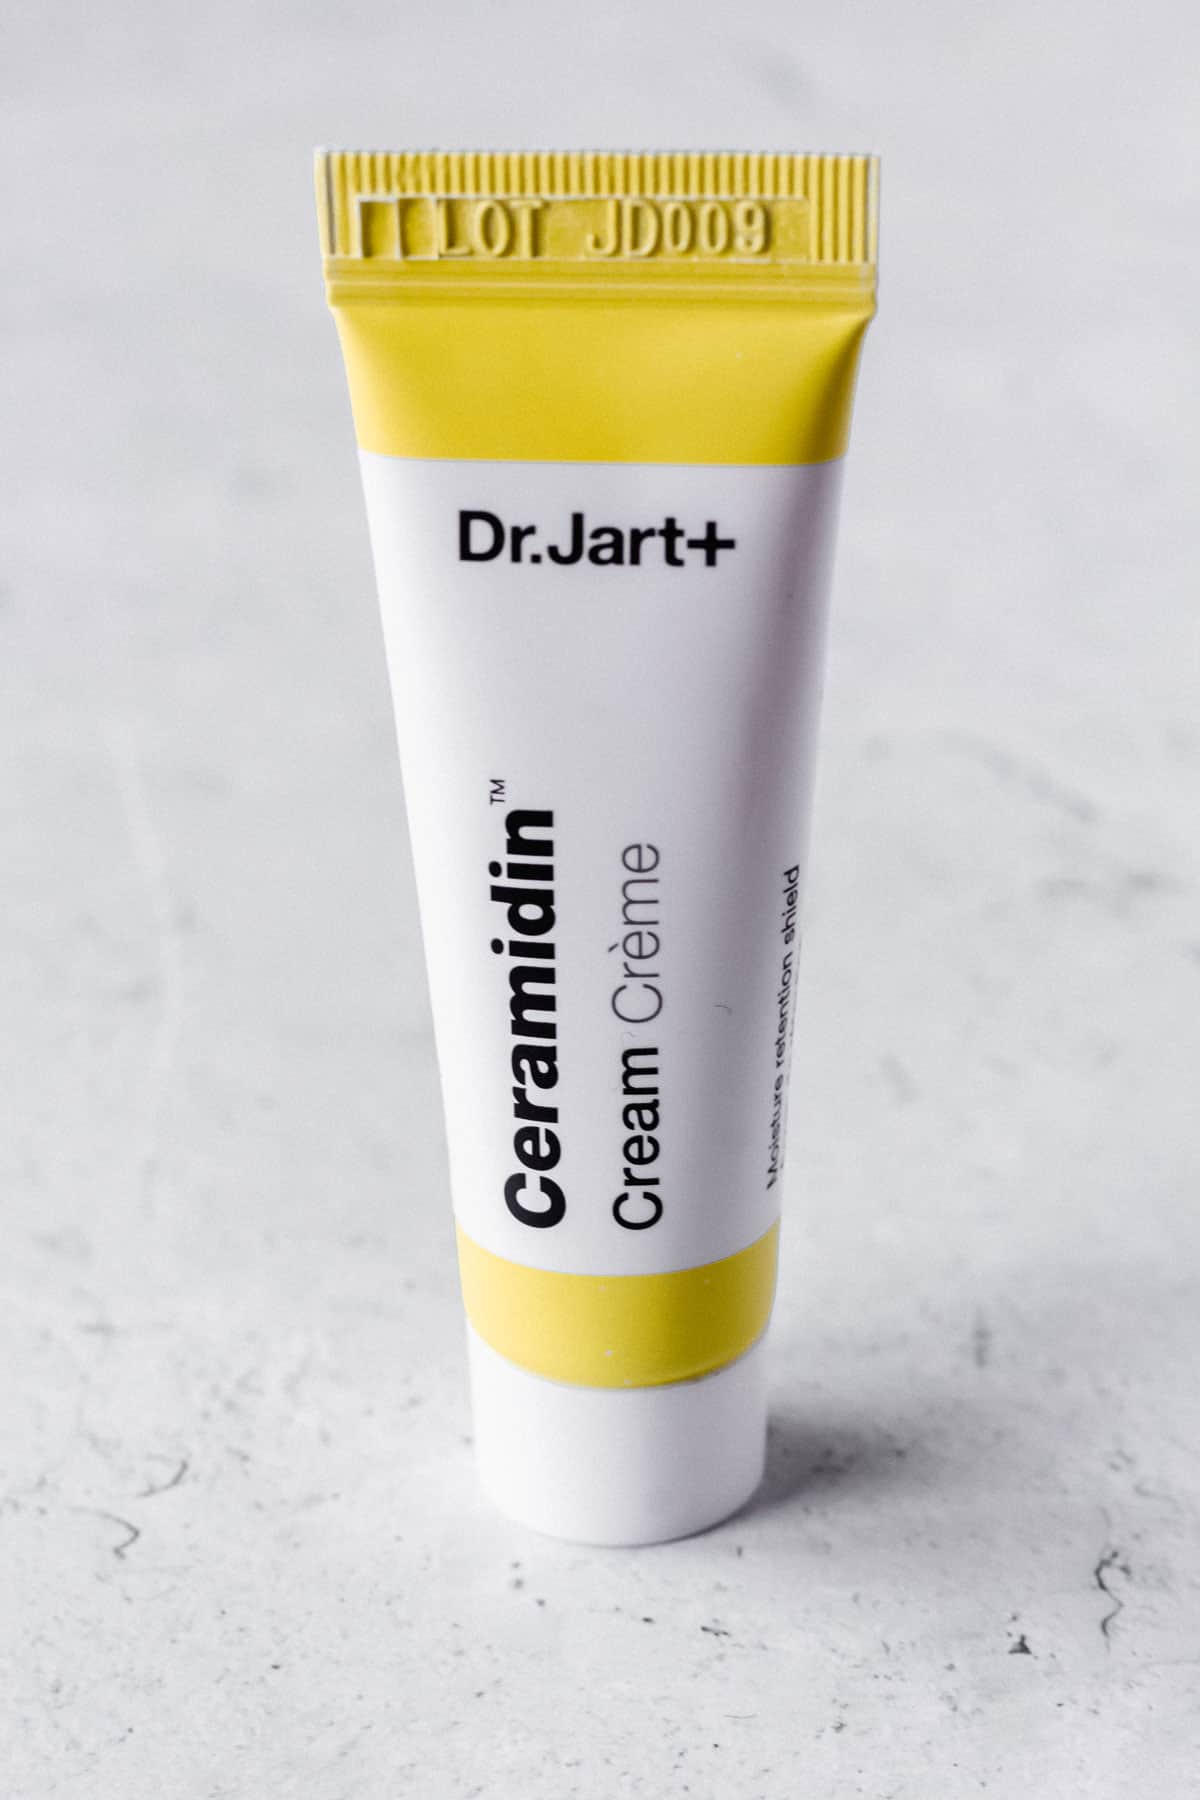 Dr. Jart Ceramide Cream sample size tube on a white background